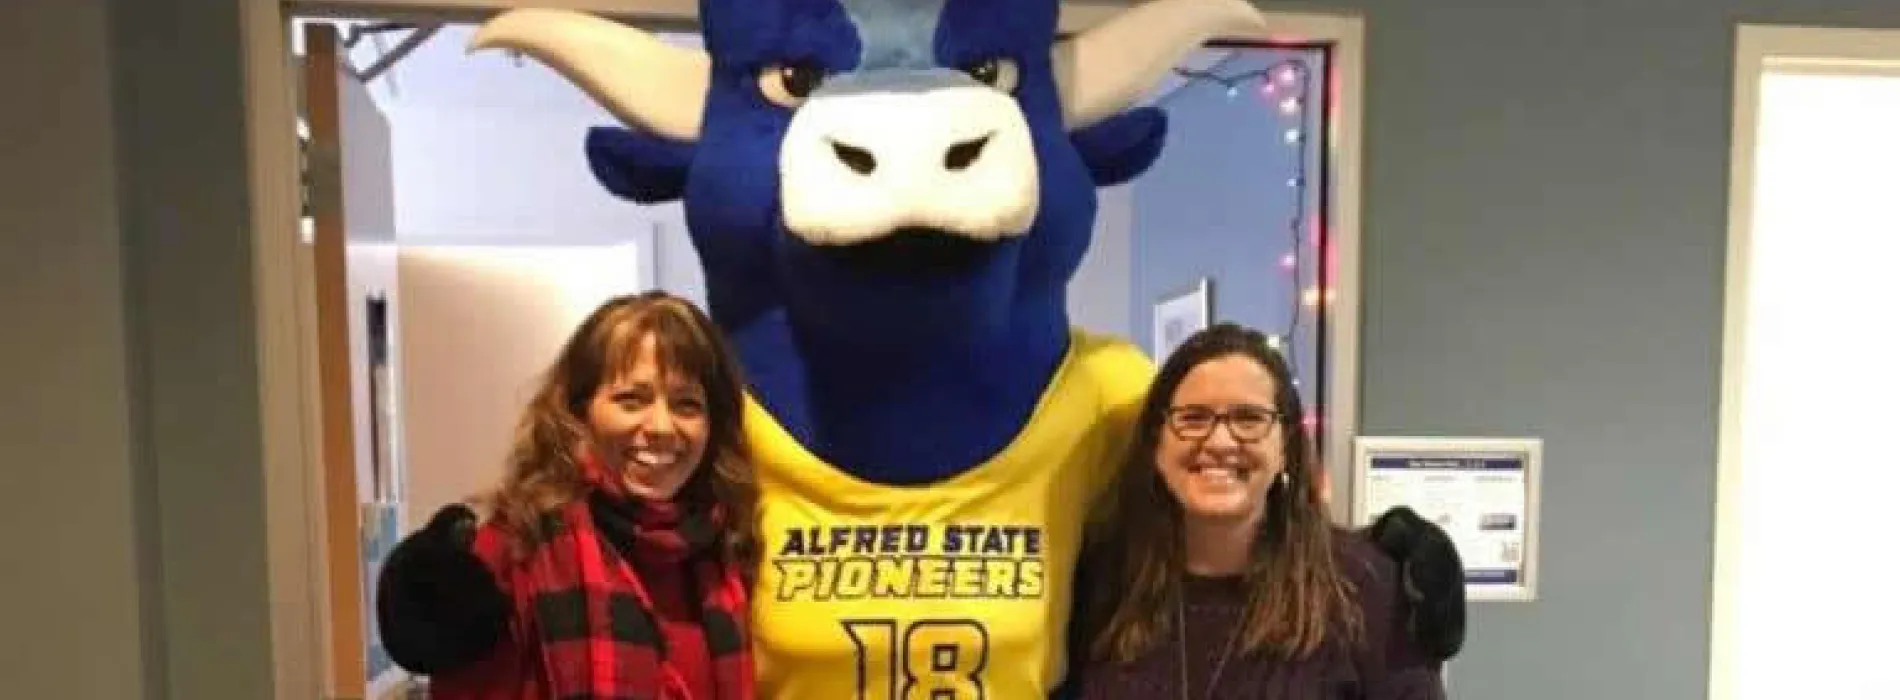 Elaine, Big Blue the ox mascot, and Maureen